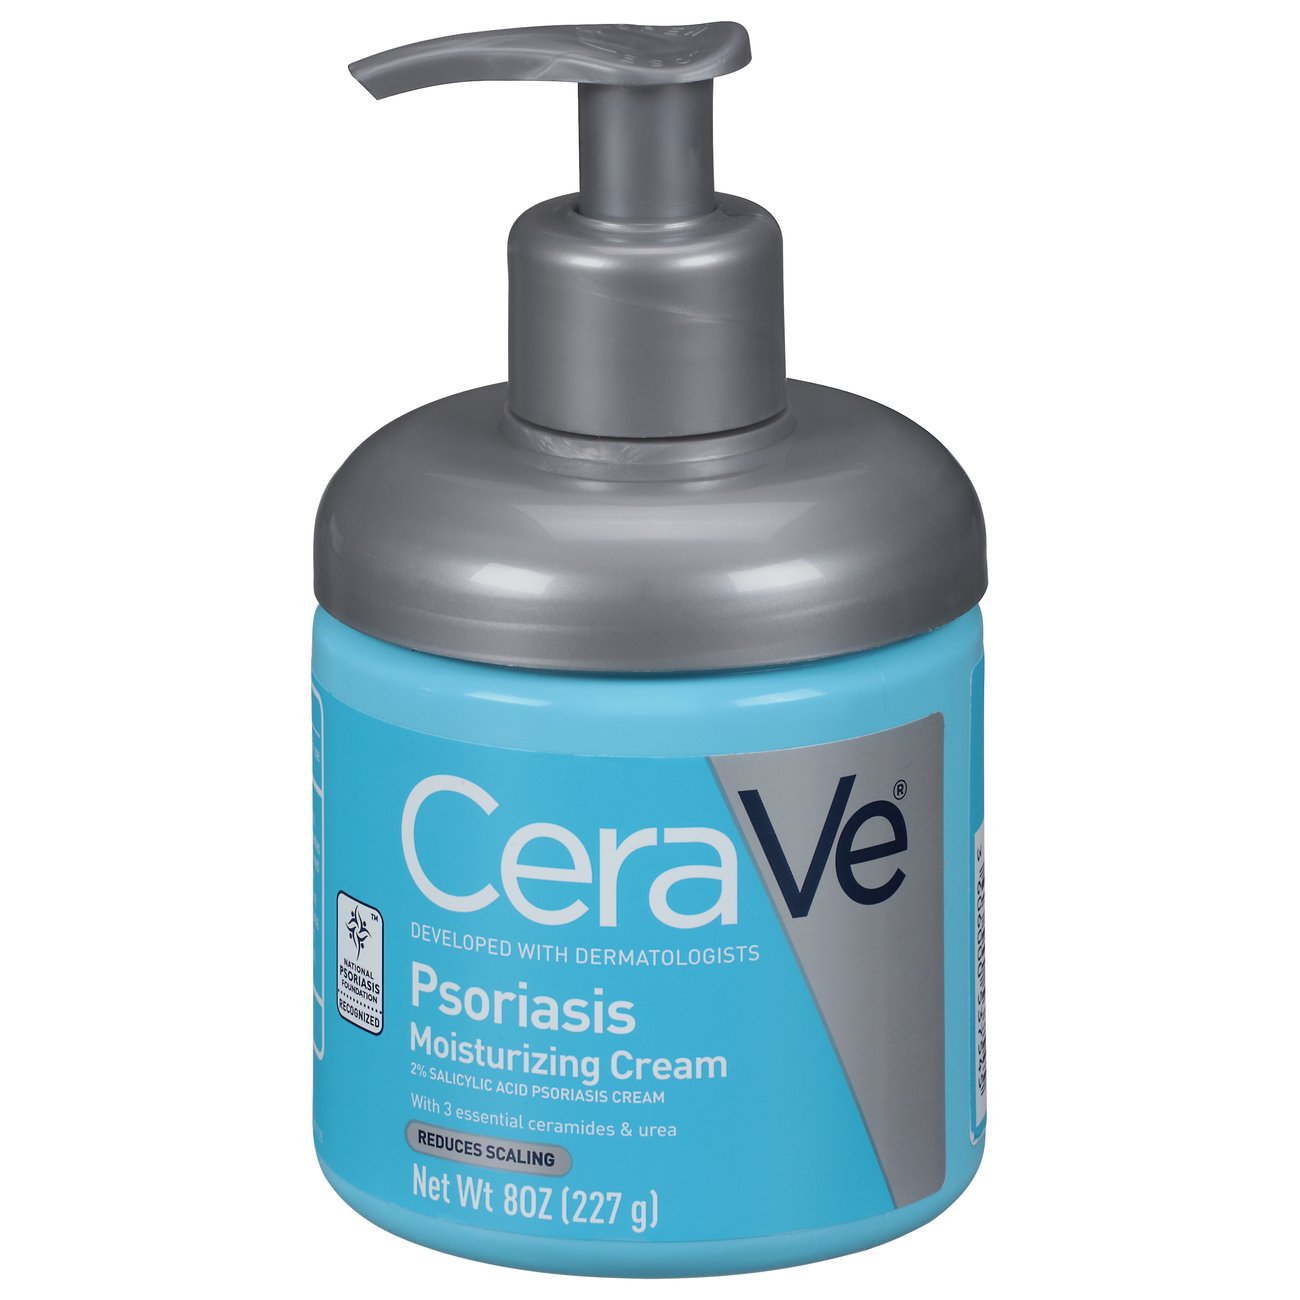 Cerave moisturising cream pikkelysömör | Psorilin Magyarországon